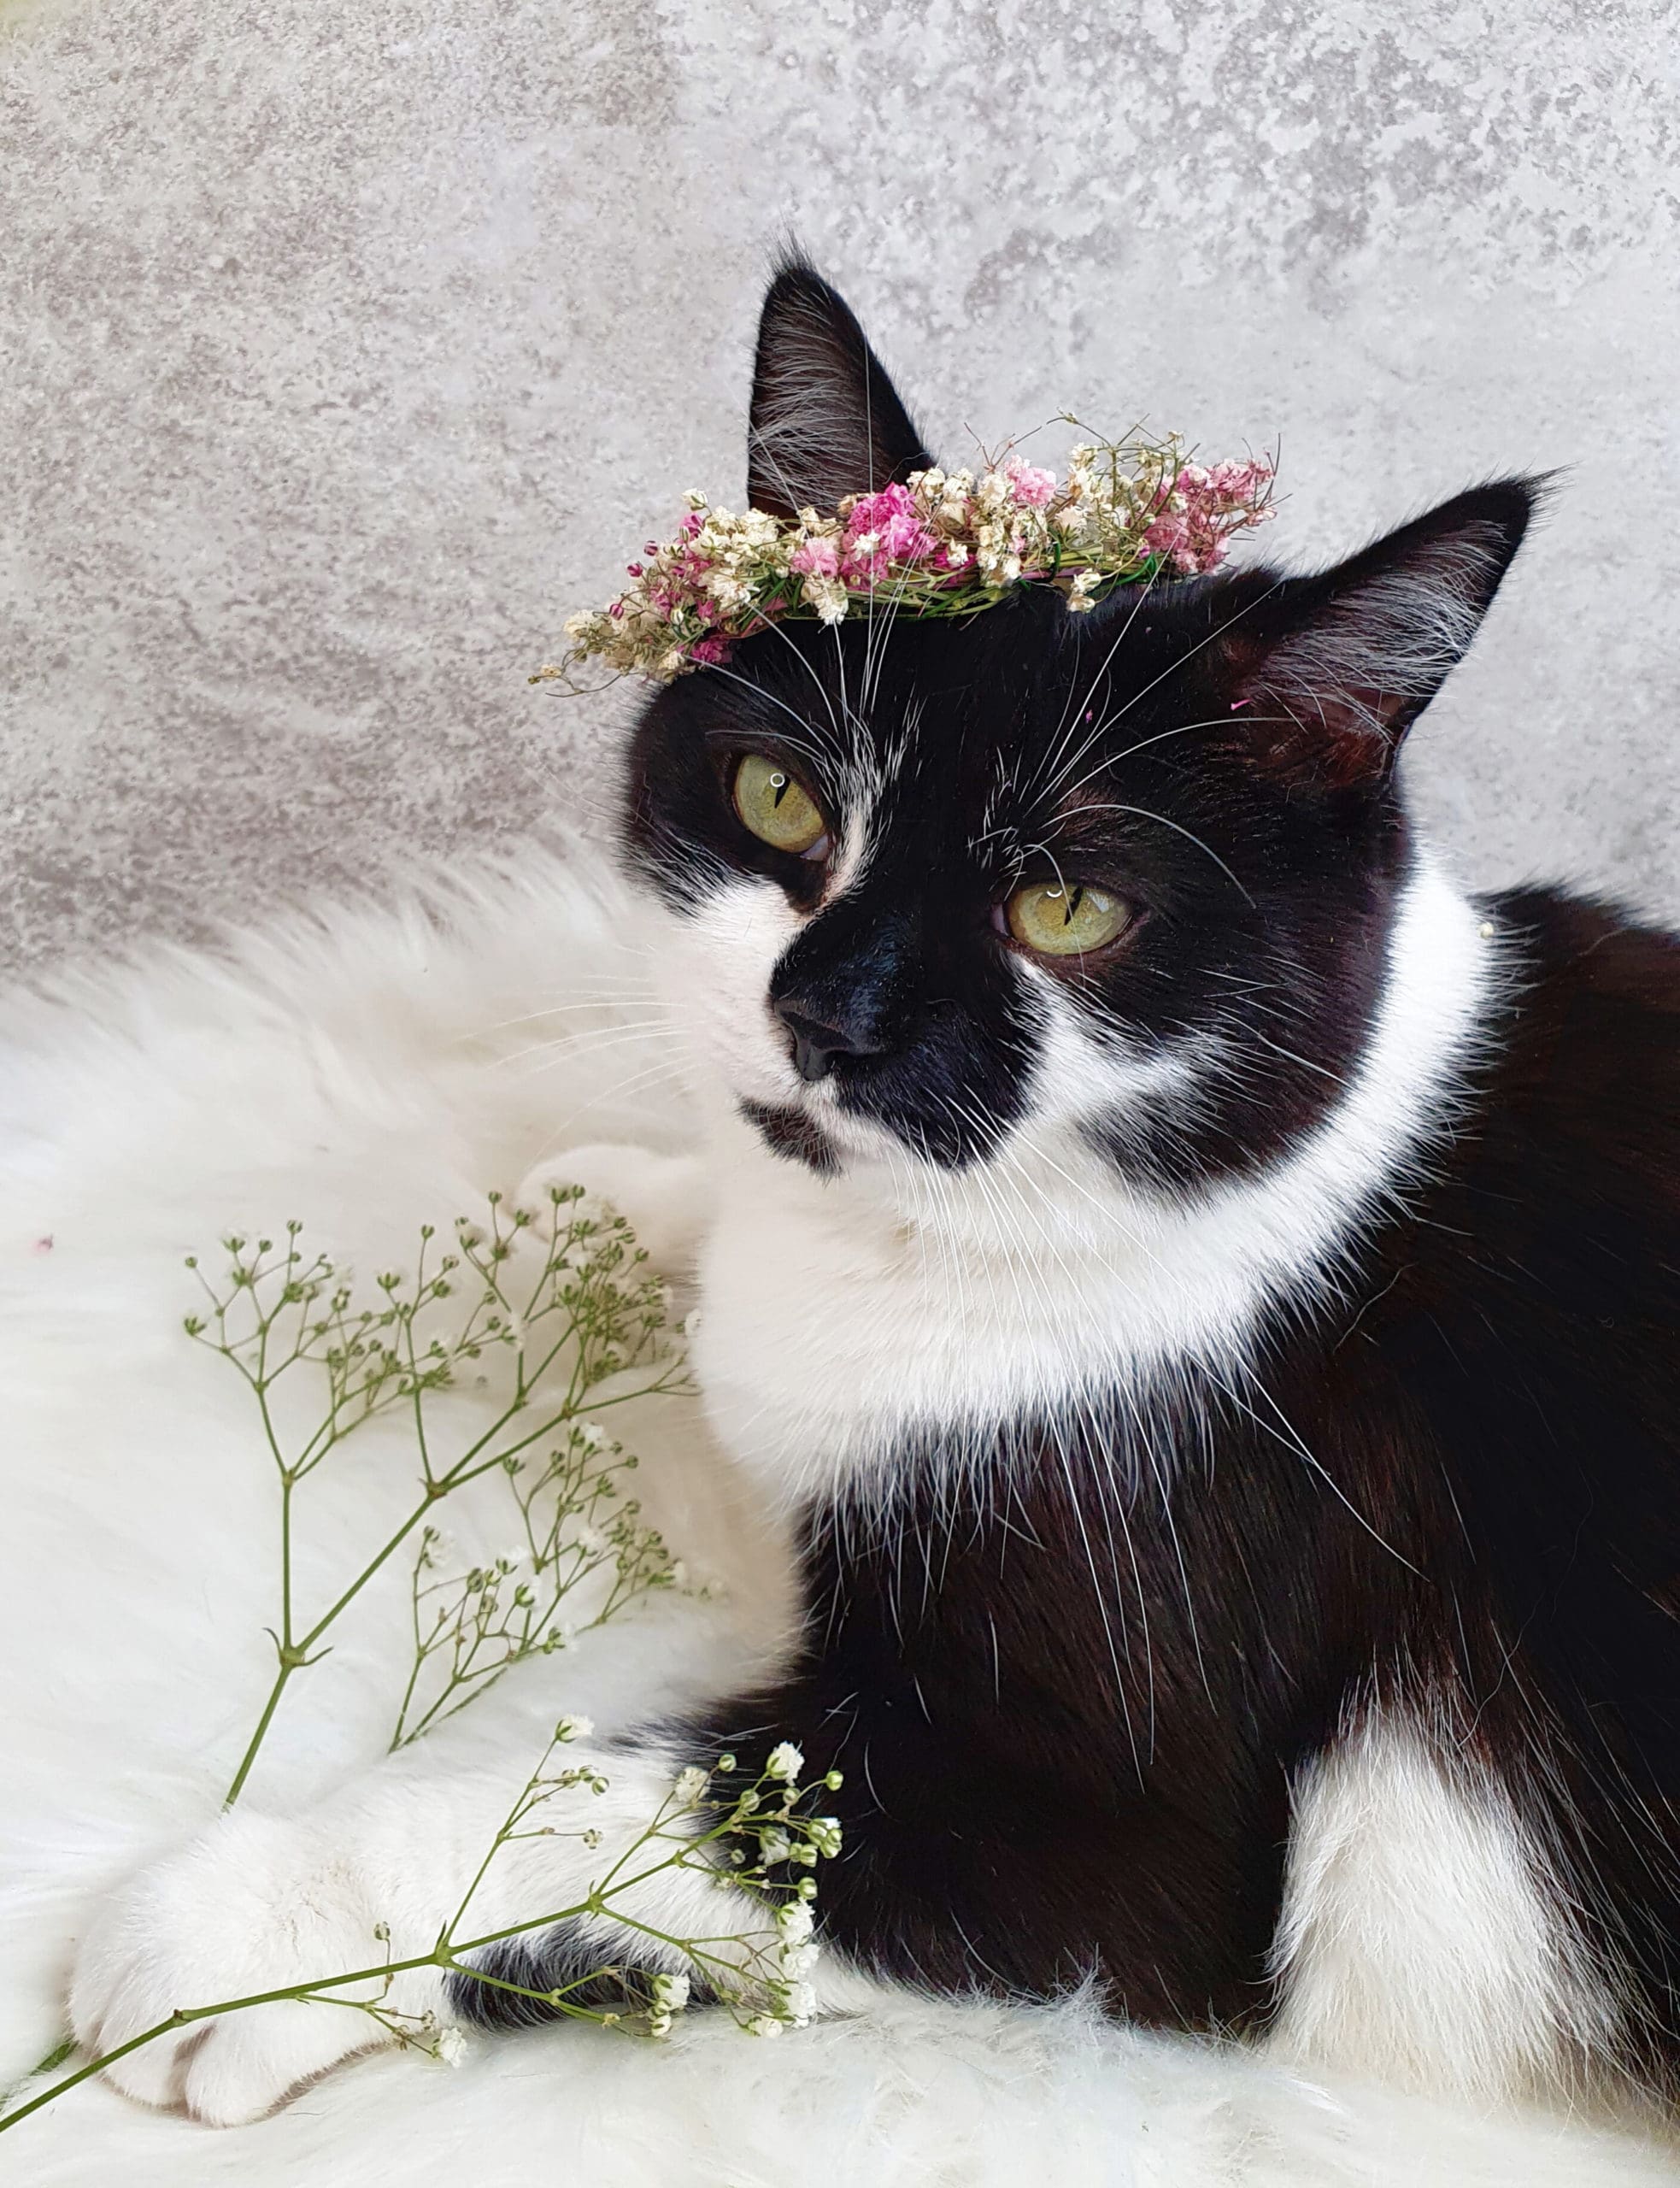 Zu sehen ist eine schwarz weiße Katze mit Blumen